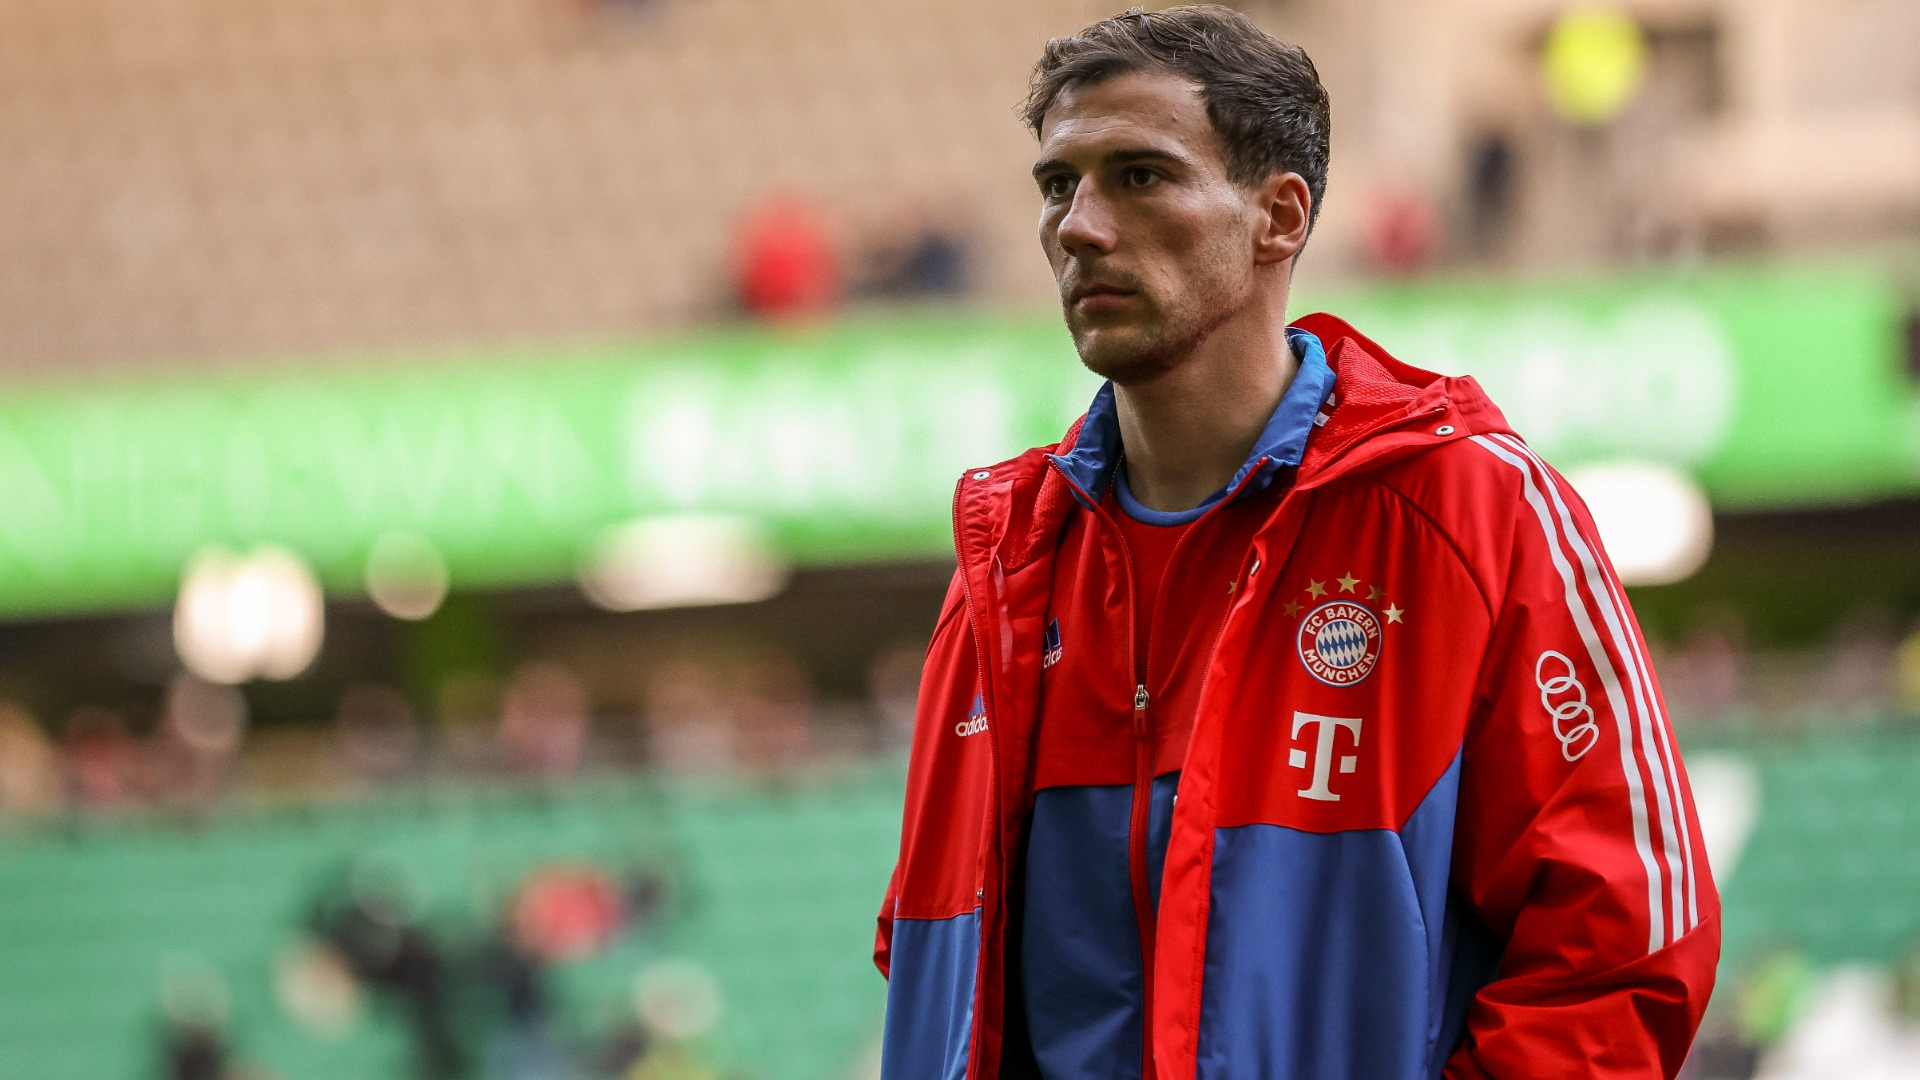 Bayern: Inquiétante nouvelle transformation physique de Goretzka, les fans sous le choc (PHOTO)